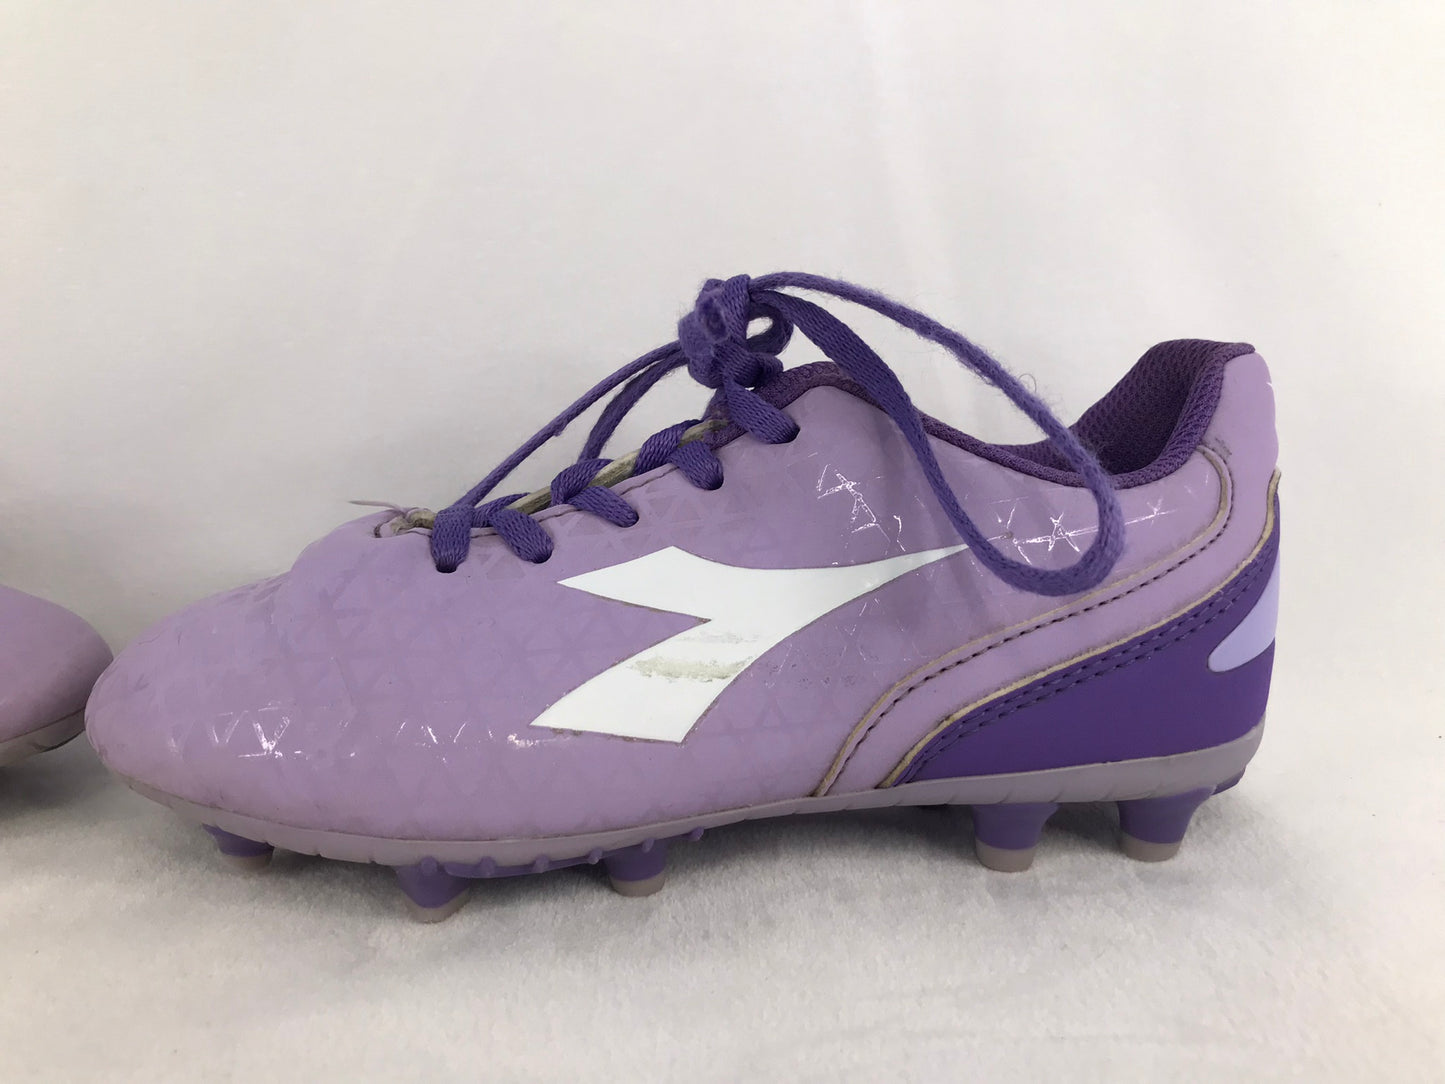 Soccer Shoes Cleats Child Size 1 Diadora Purple